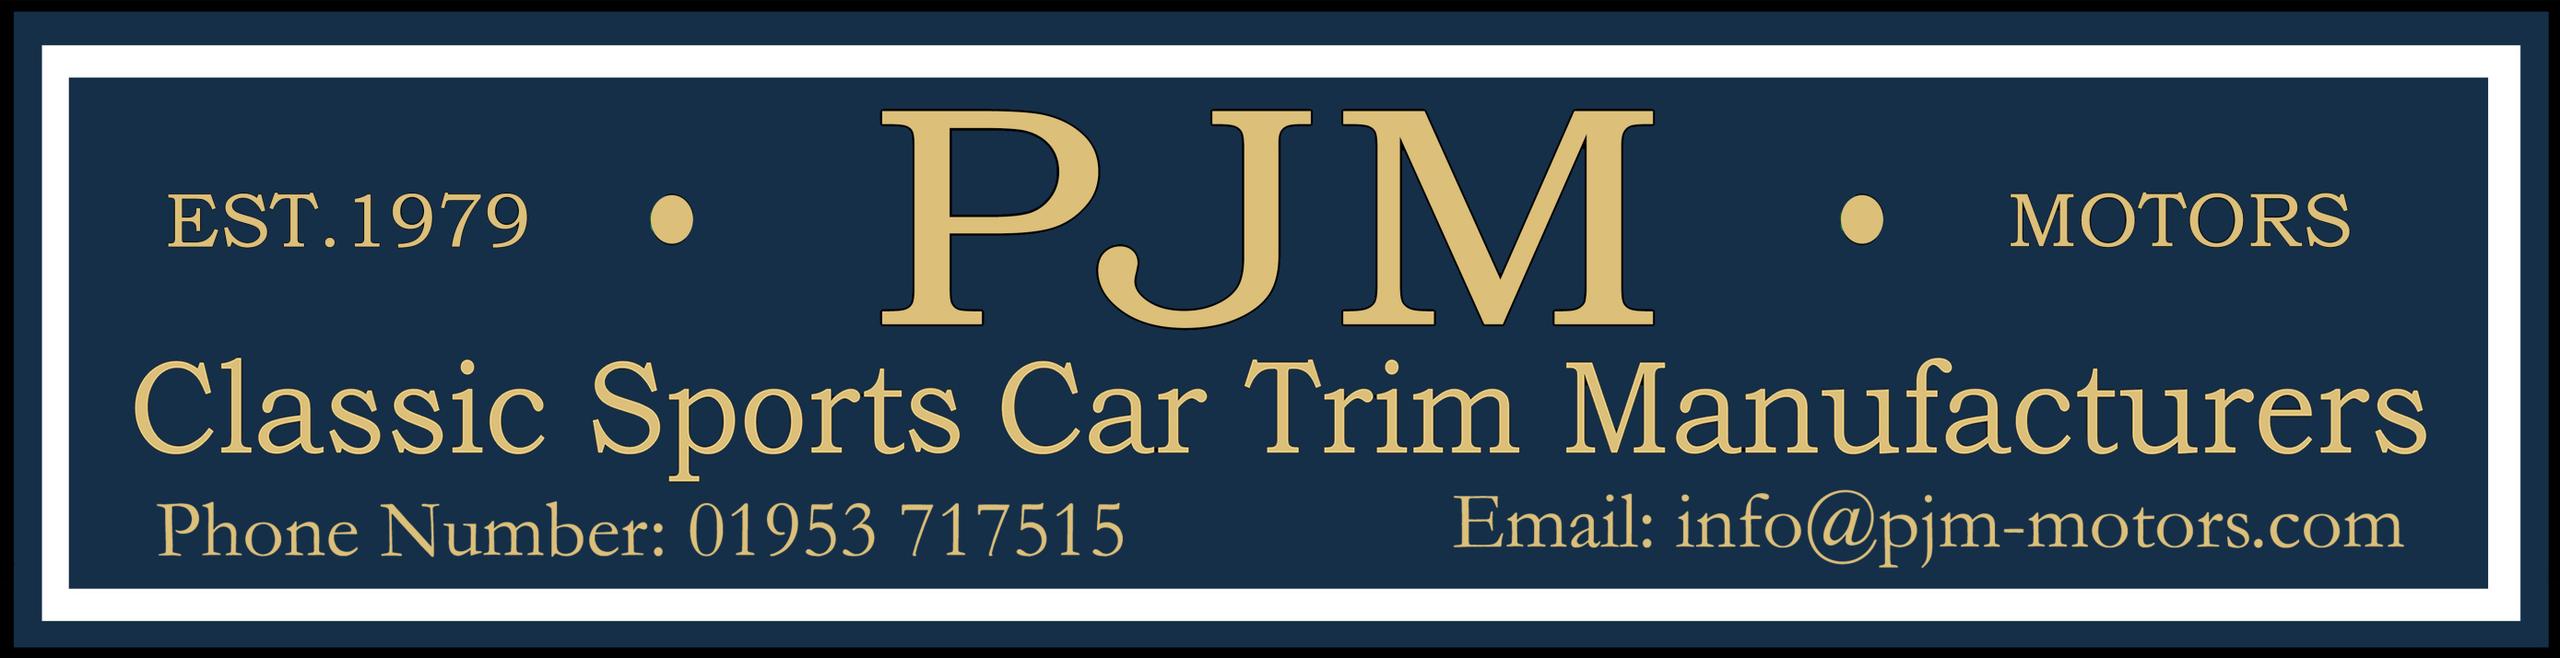 PJM Motors (Est:1979)